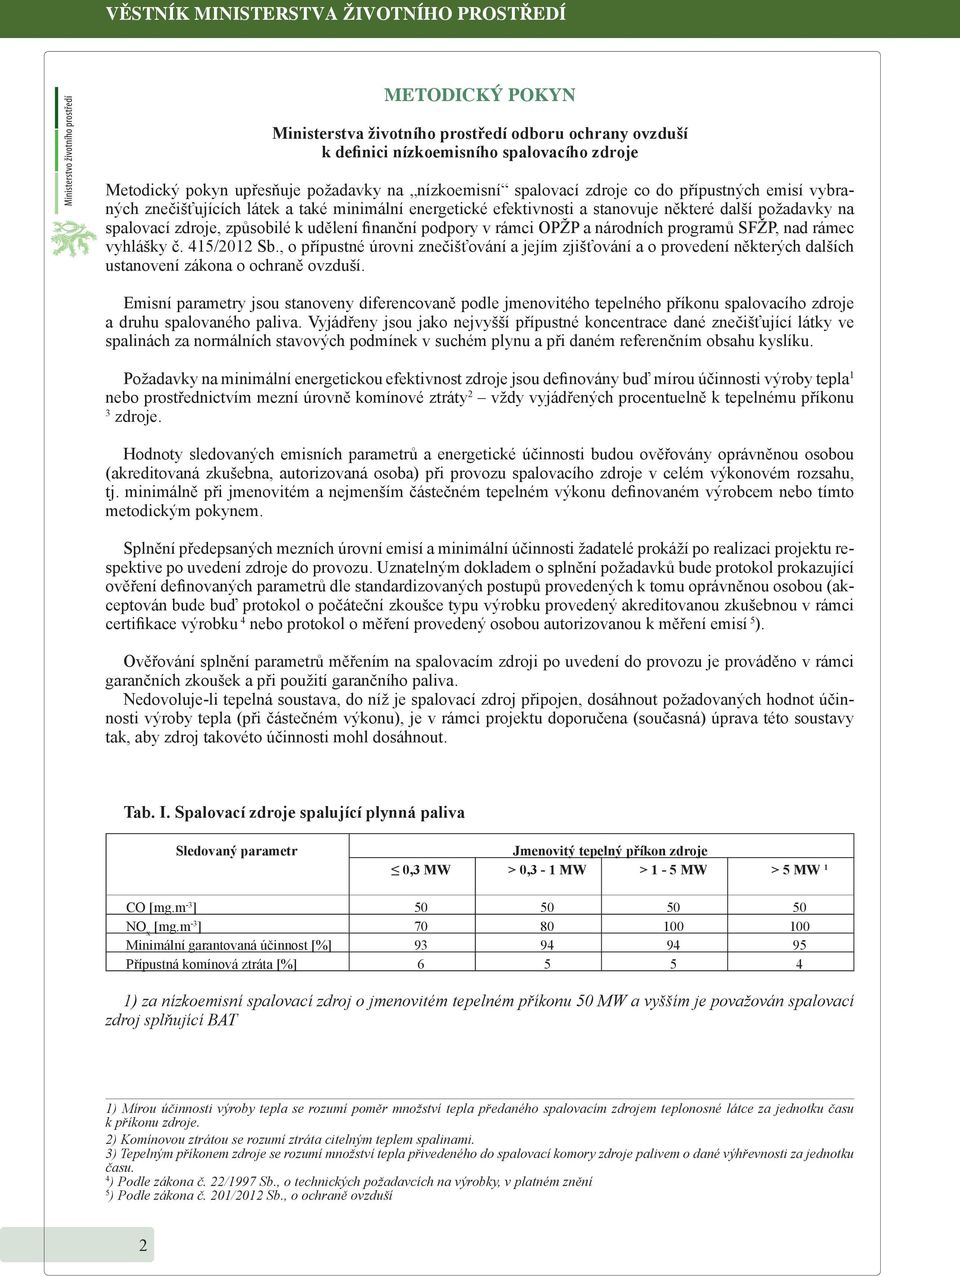 udělení finanční podpory v rámci OPŽP a národních programů SFŽP, nad rámec vyhlášky č. 415/2012 Sb.